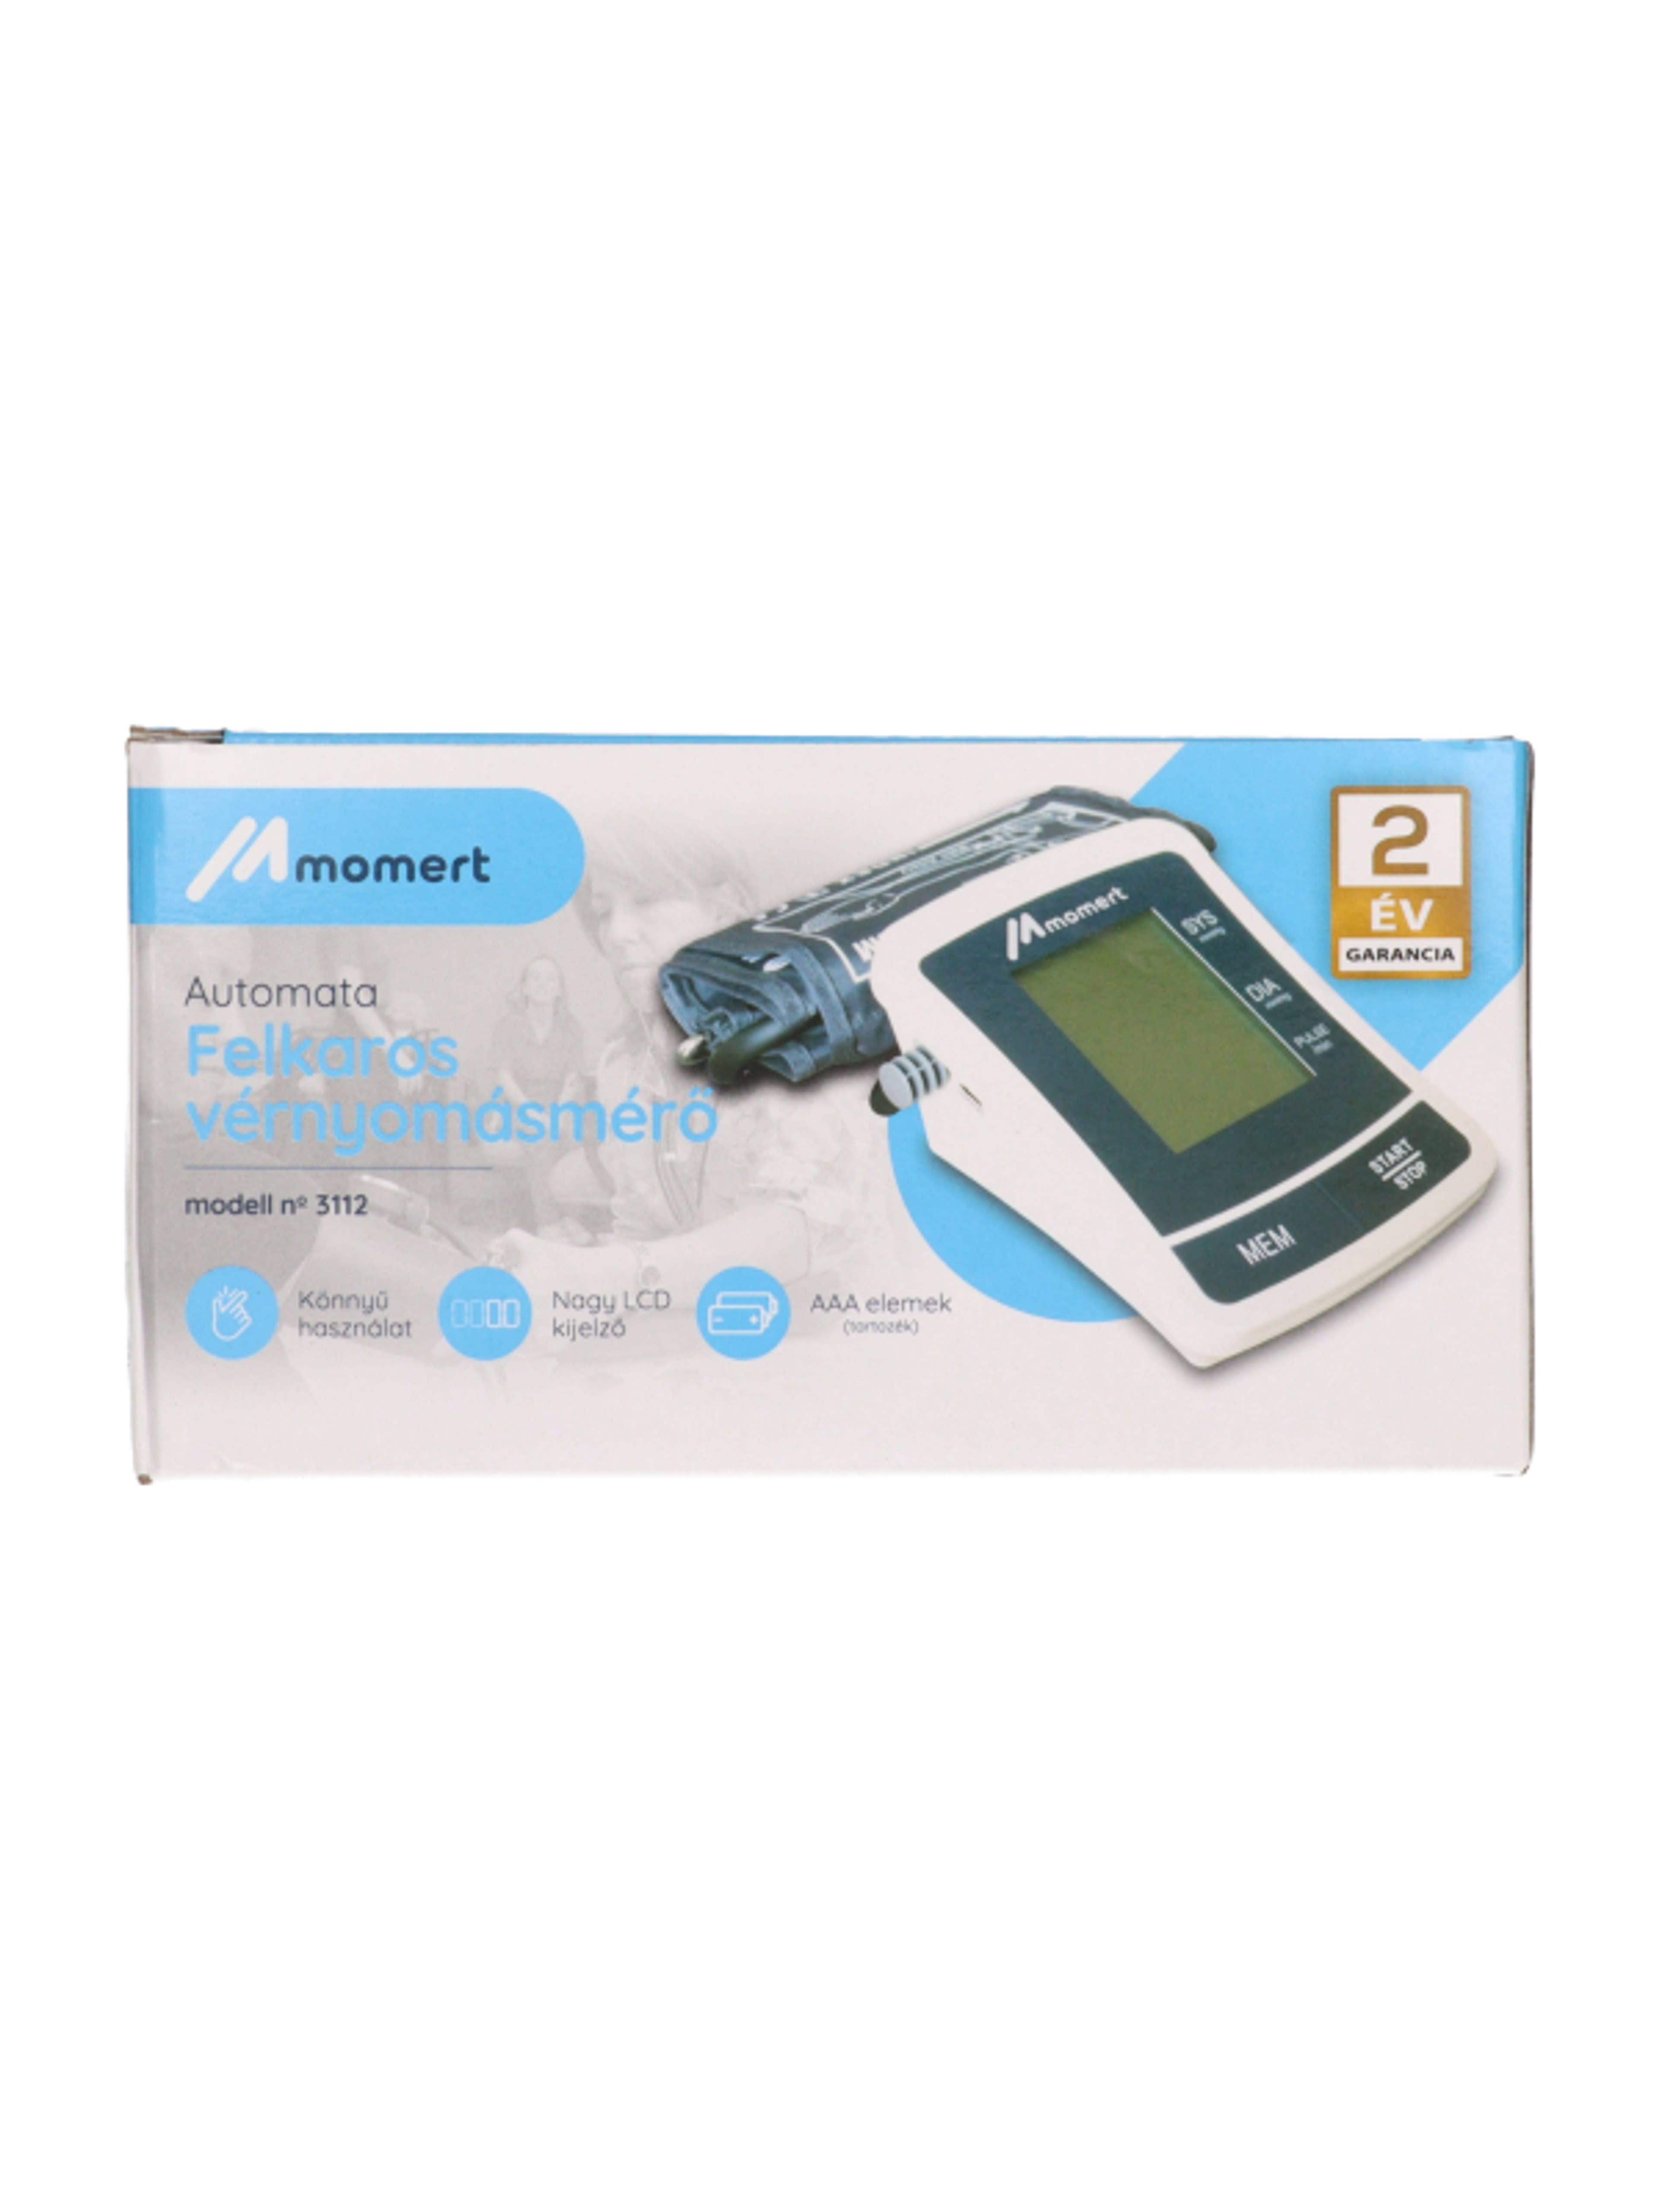 Momert automata vérnyomásmérő - 1 db-1